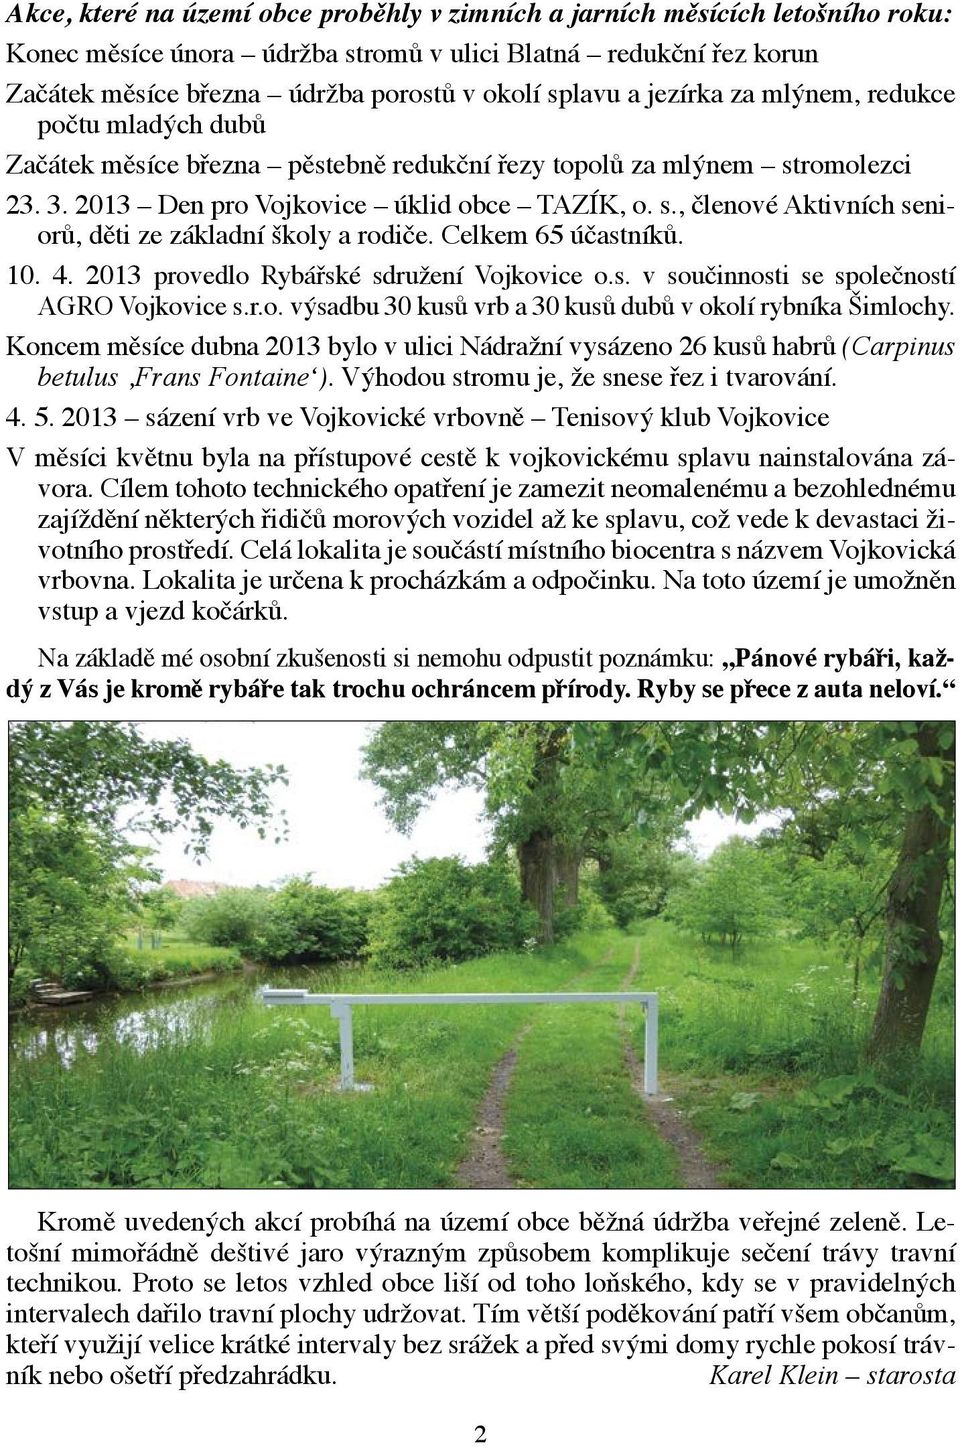 Celkem 65 účastníků. 10. 4. 2013 provedlo Rybářské sdružení Vojkovice o.s. v součinnosti se společností AGRO Vojkovice s.r.o. výsadbu 30 kusů vrb a 30 kusů dubů v okolí rybníka Šimlochy.